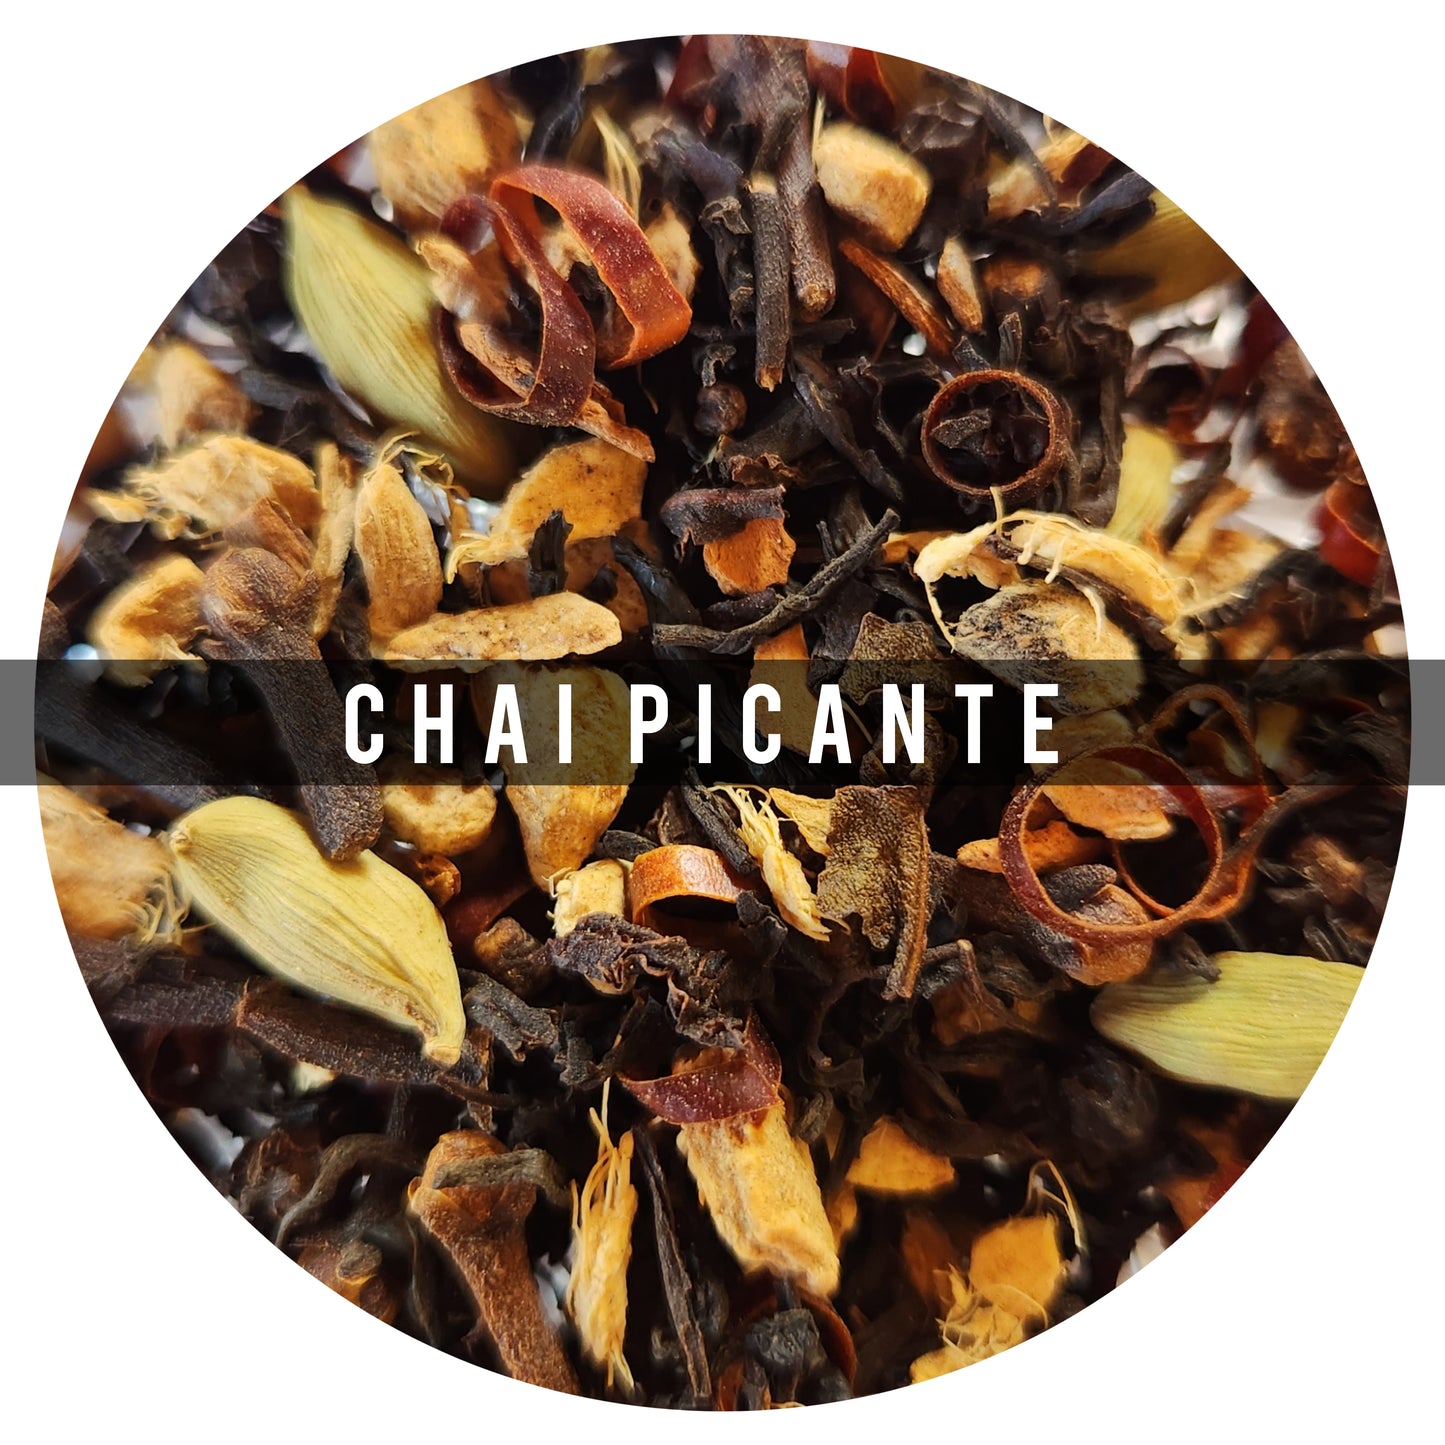 Chai Picante 100g: ¡Si te gusta lo picante, este chai lo amaras! Ideal para cuando te encuentras resfriado o con problemas respiratorios 
Ingredientes :Te Negro, Jengibre, Clavo, Pimi